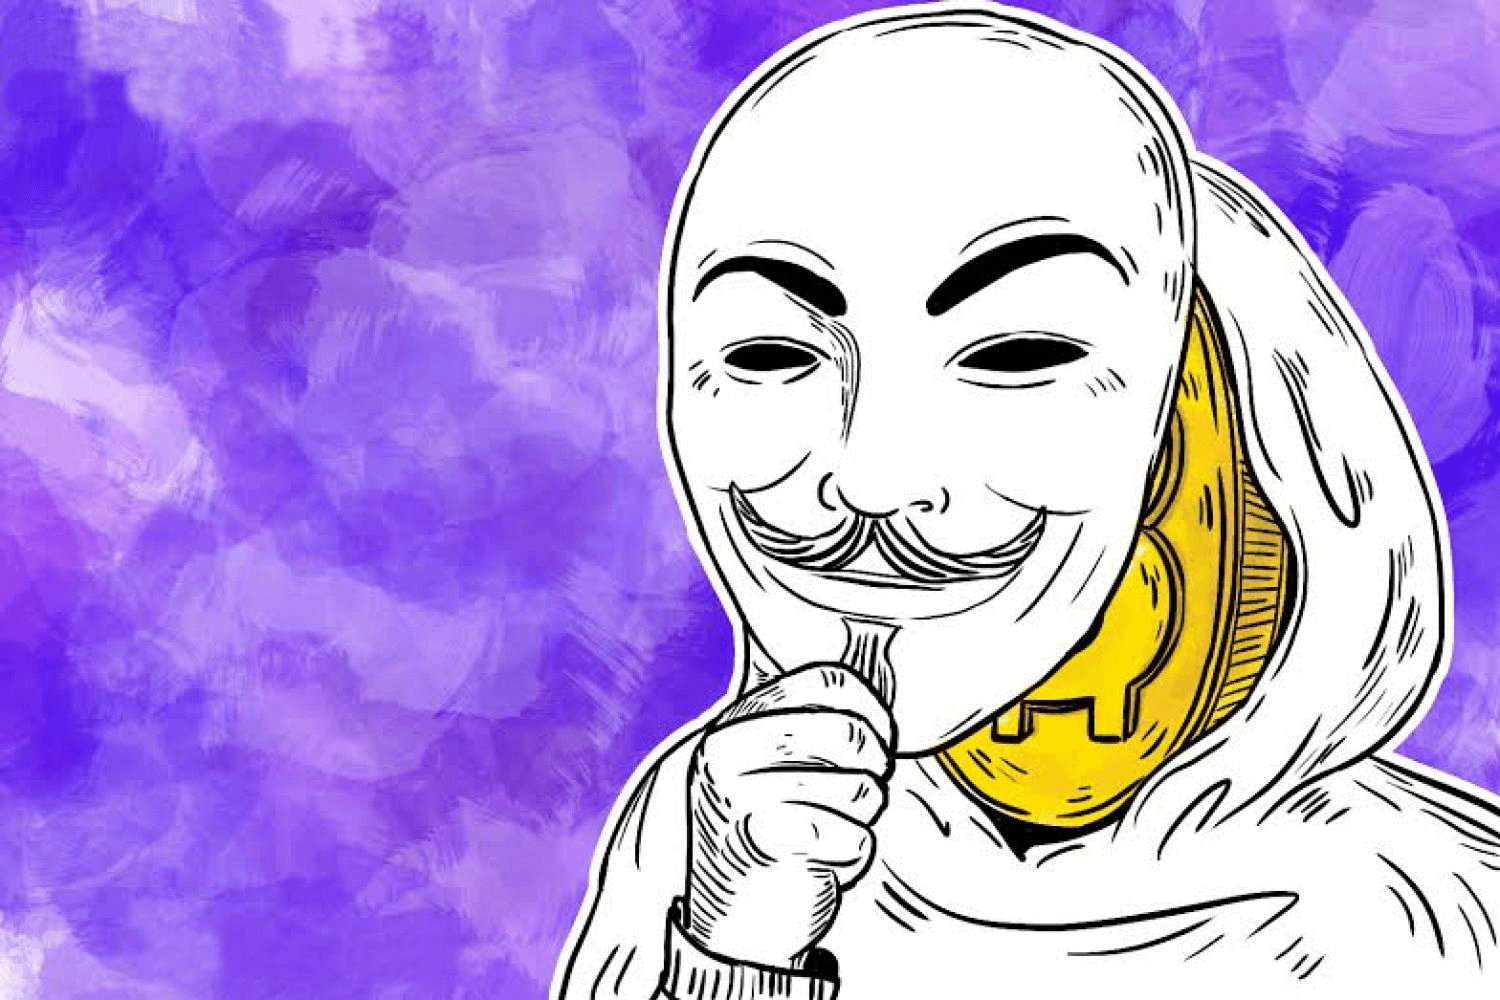 Compre bitcoin anonimamente